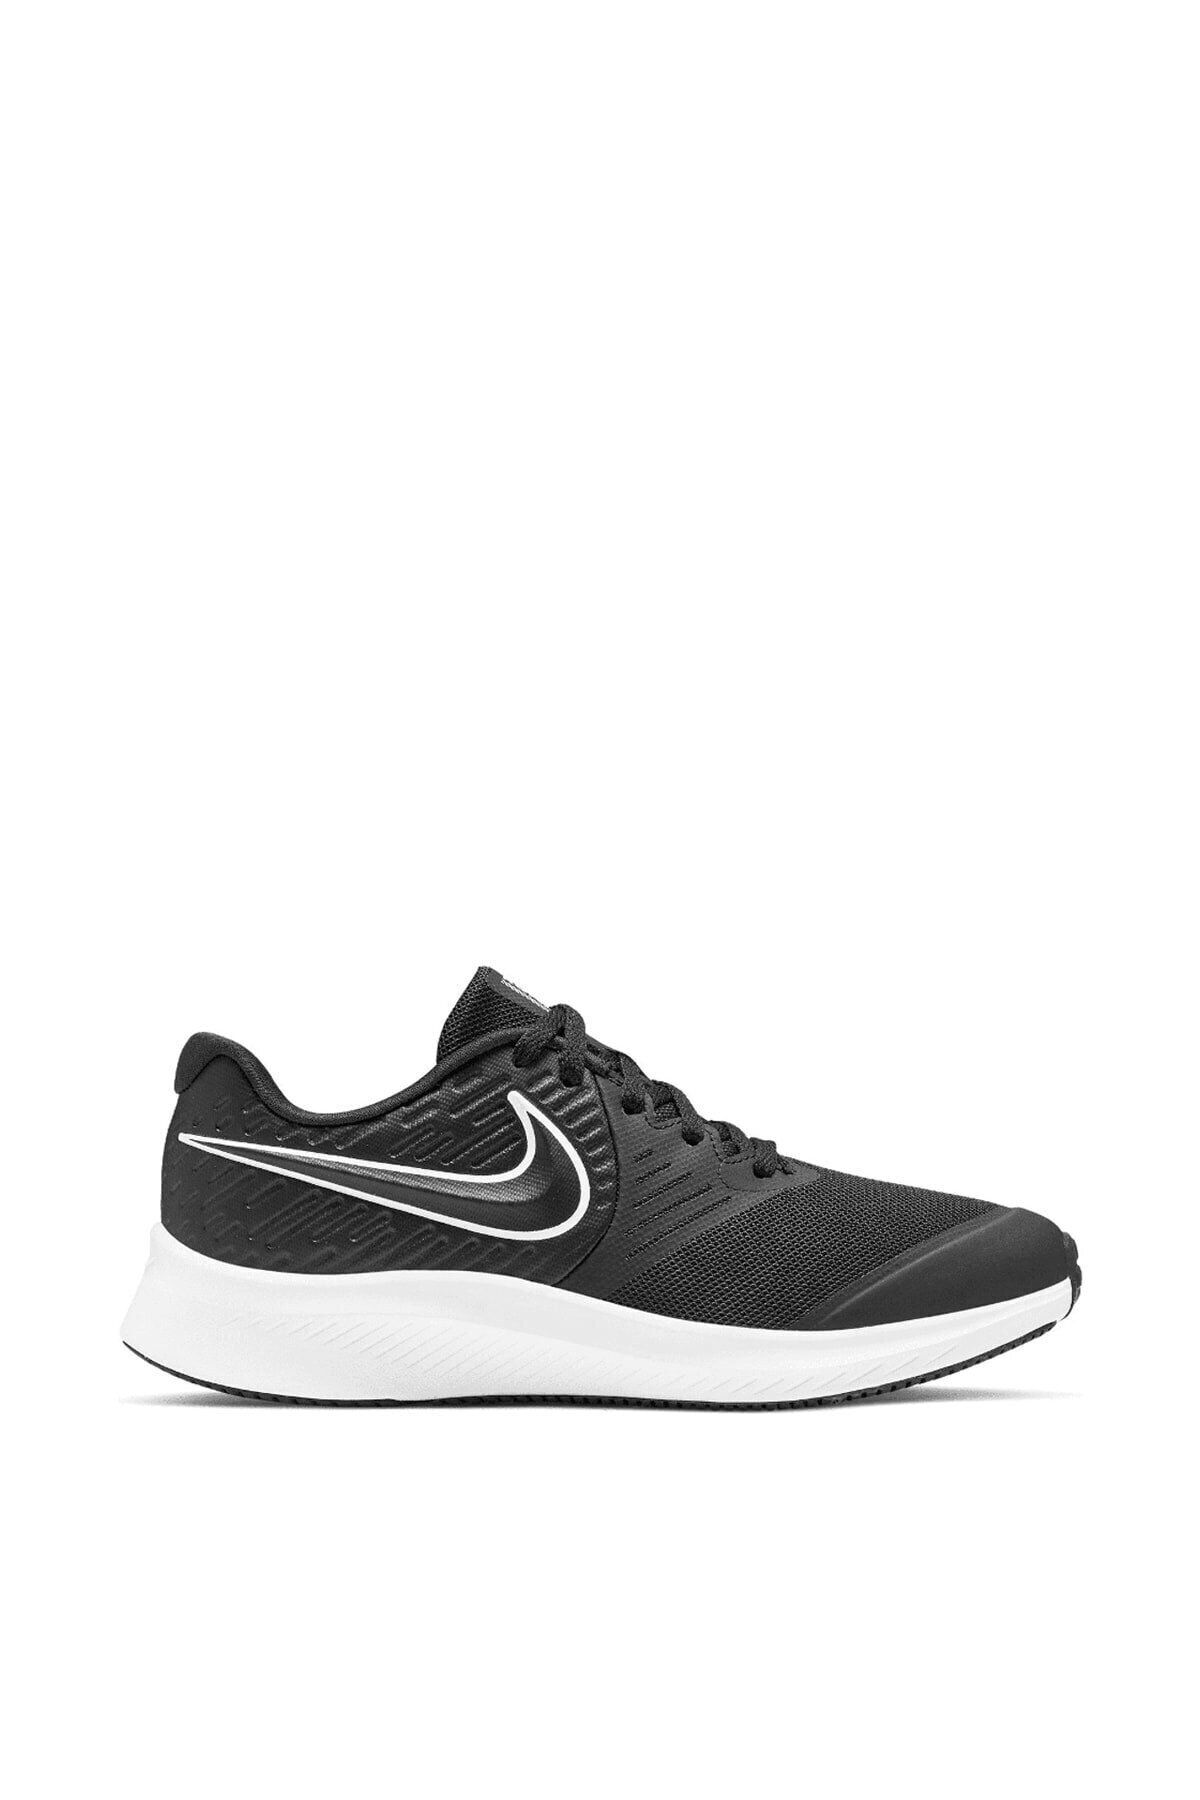 Nike Kadın Sneaker - Star Runner 2 - Aq3542-001